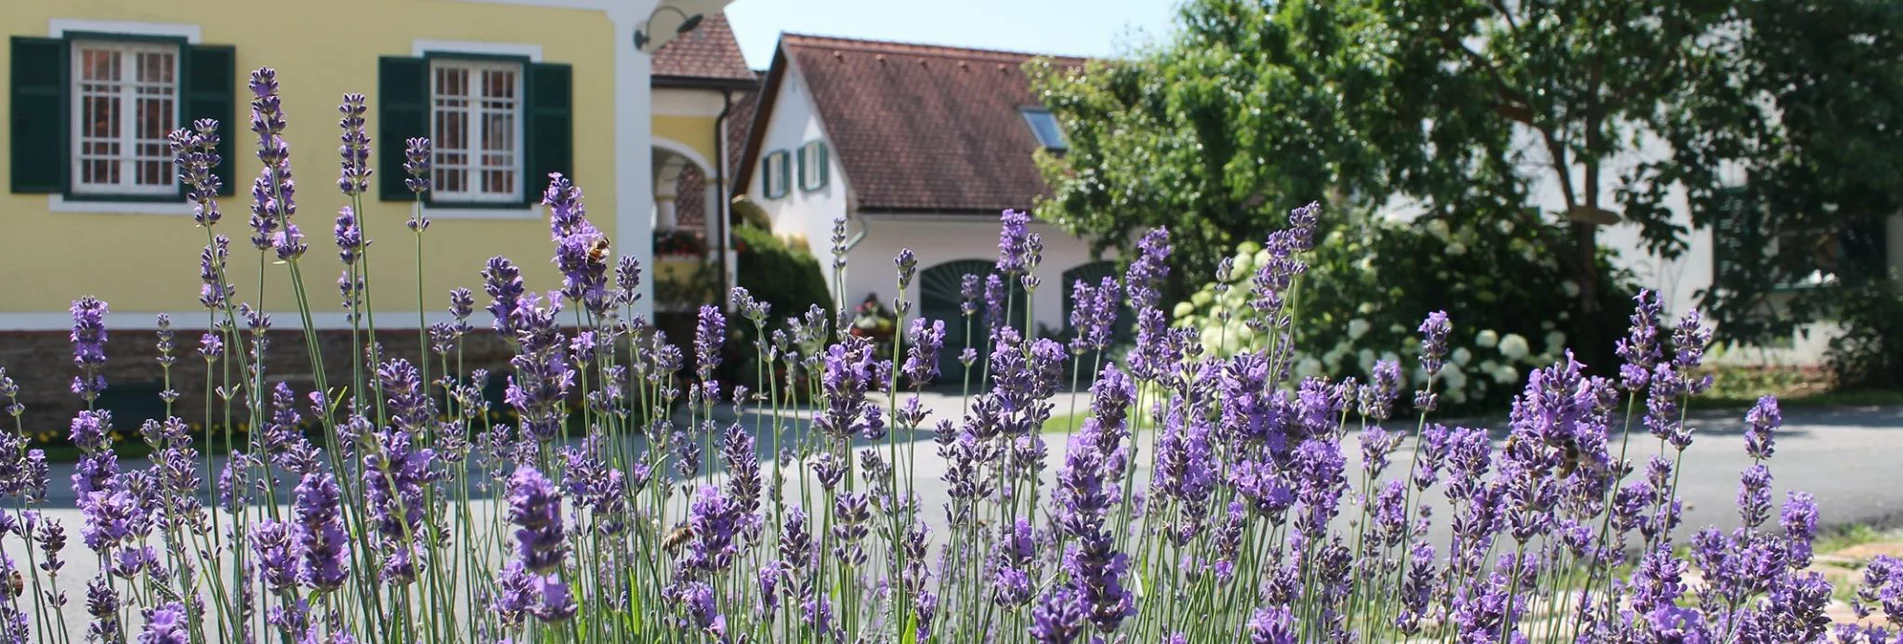 Blick in den beschatteten Innenhof des Betriebs Farmer Rabensteiner, im Vordergrund wächst Lavendel | © Farmer Rabensteiner